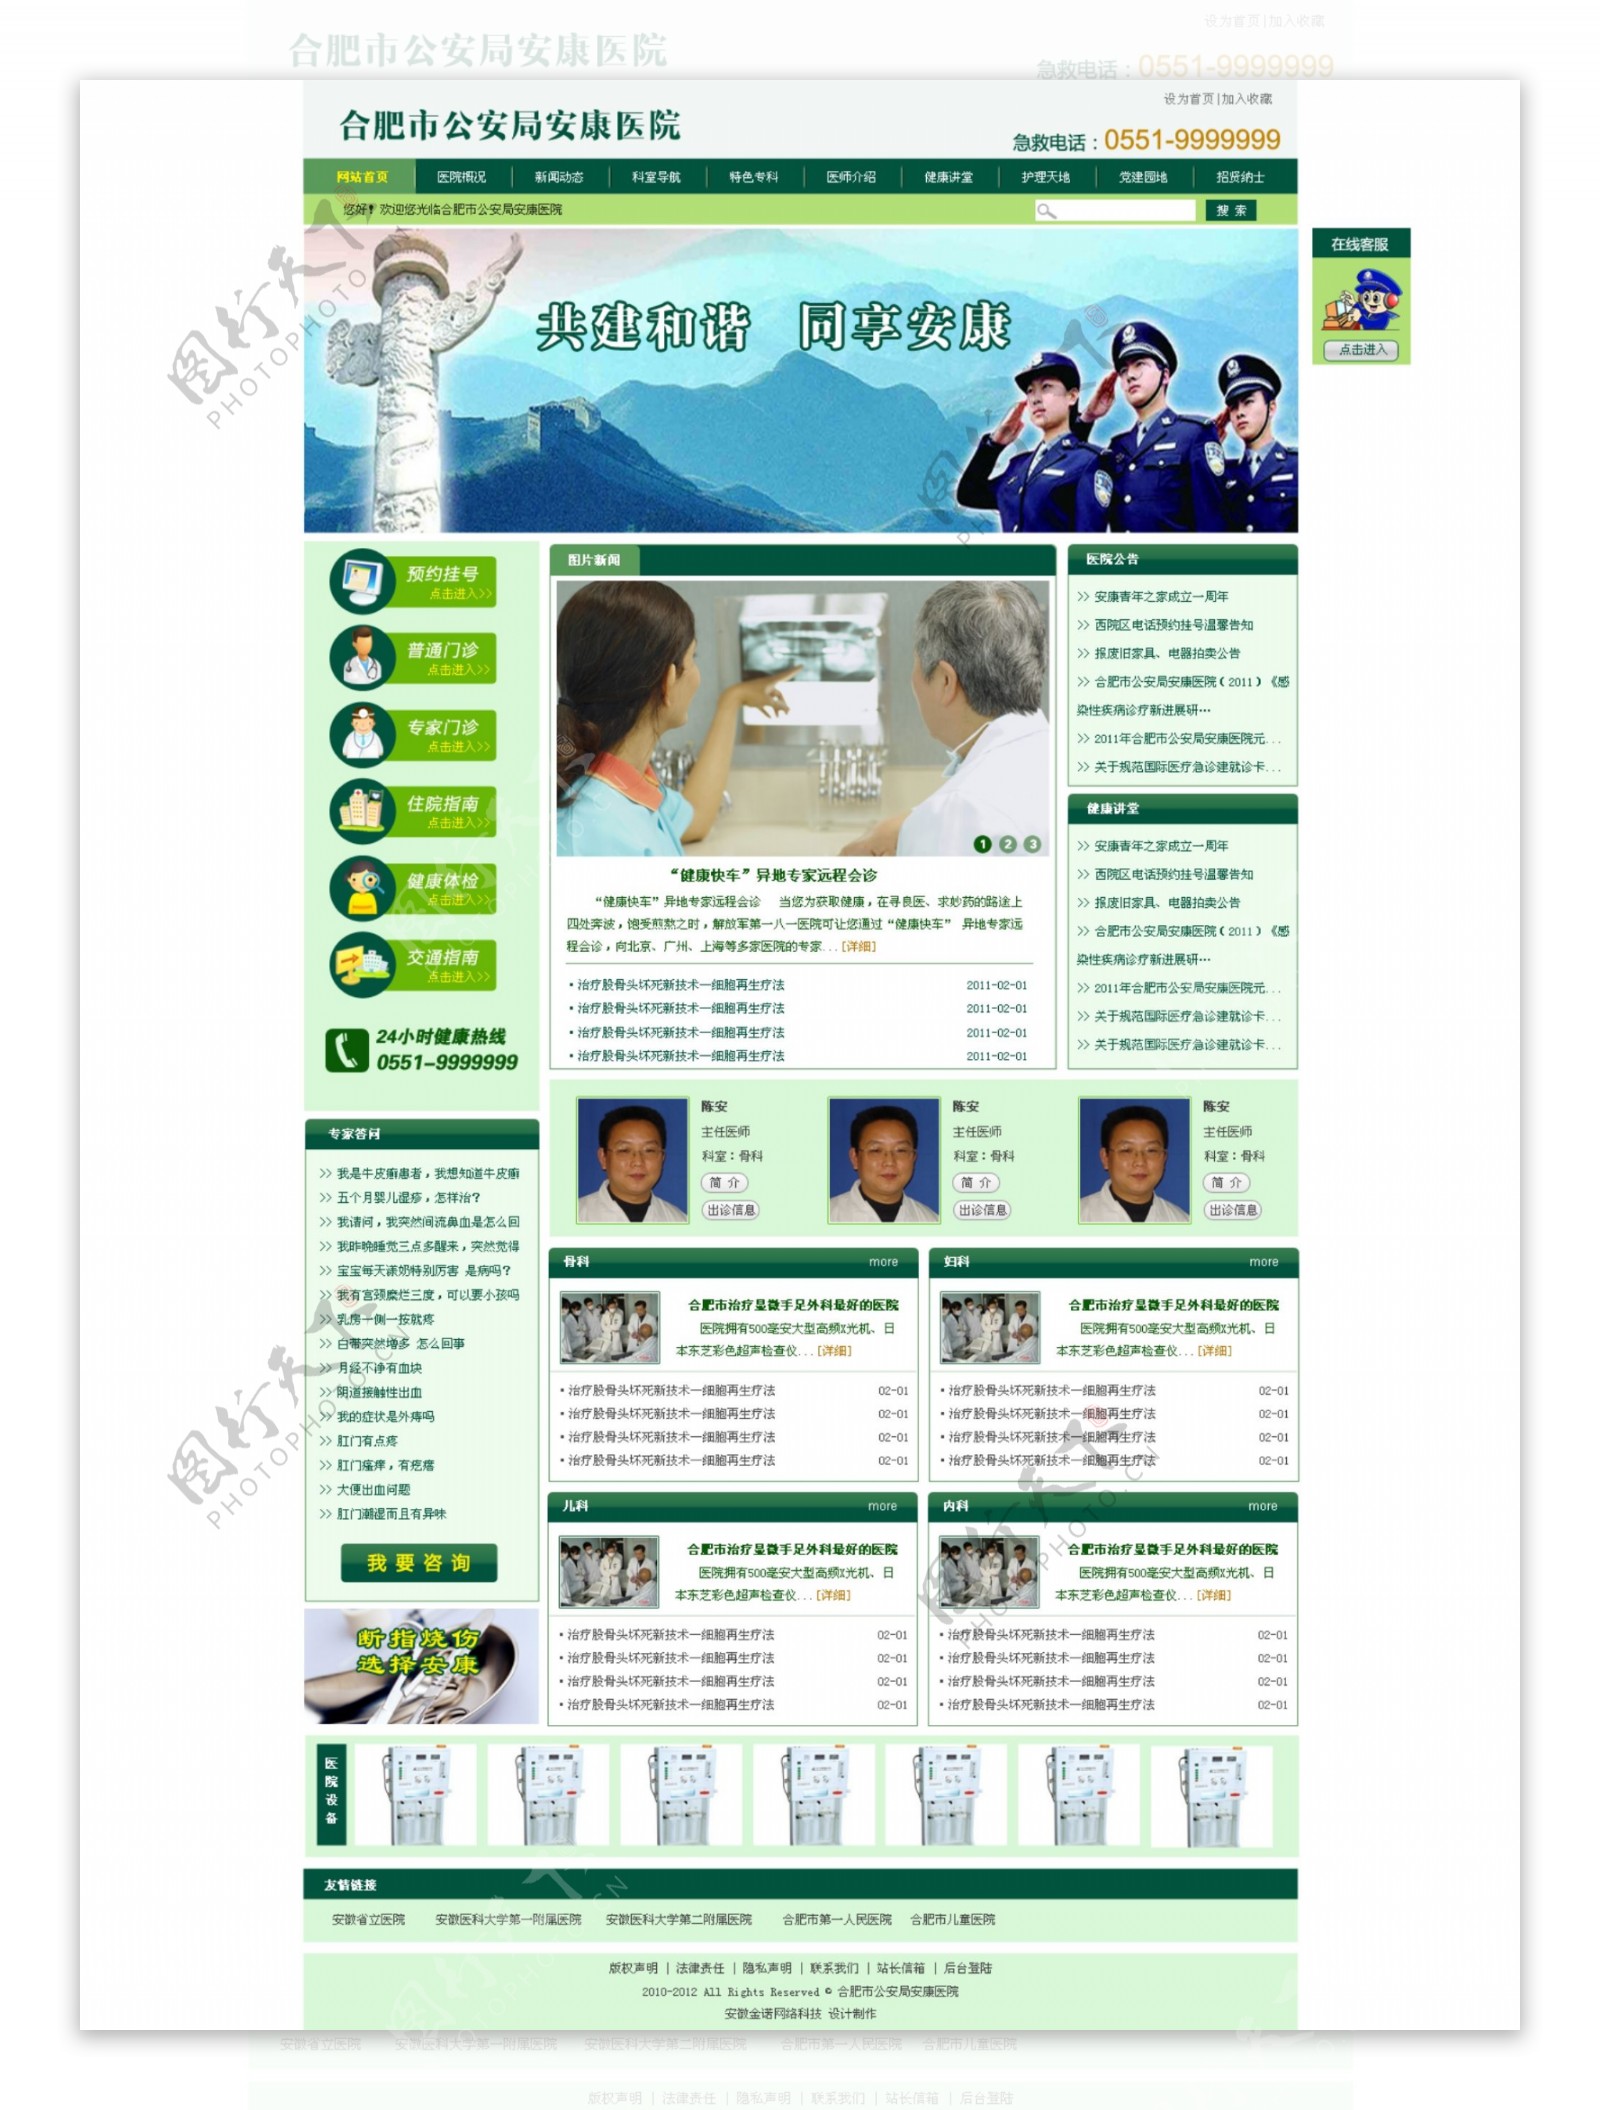 医院网站首页图片